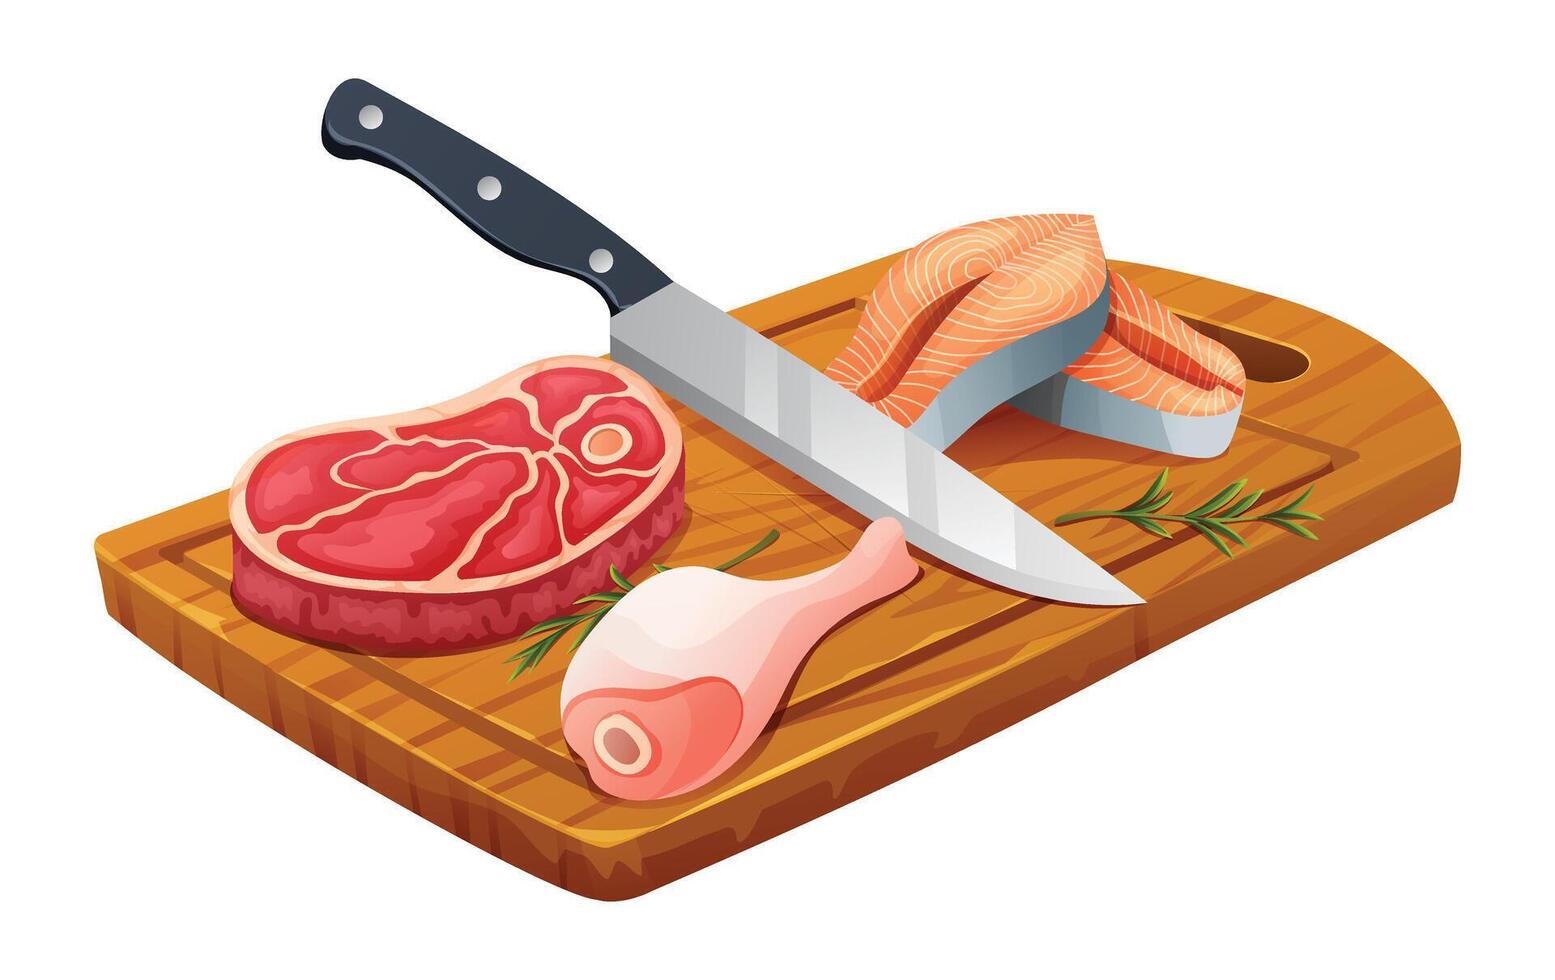 Fresco crudo carne de vaca bife, pollo pierna, y salmón filetes con cuchillo en corte tablero. vector ilustración aislado en blanco antecedentes